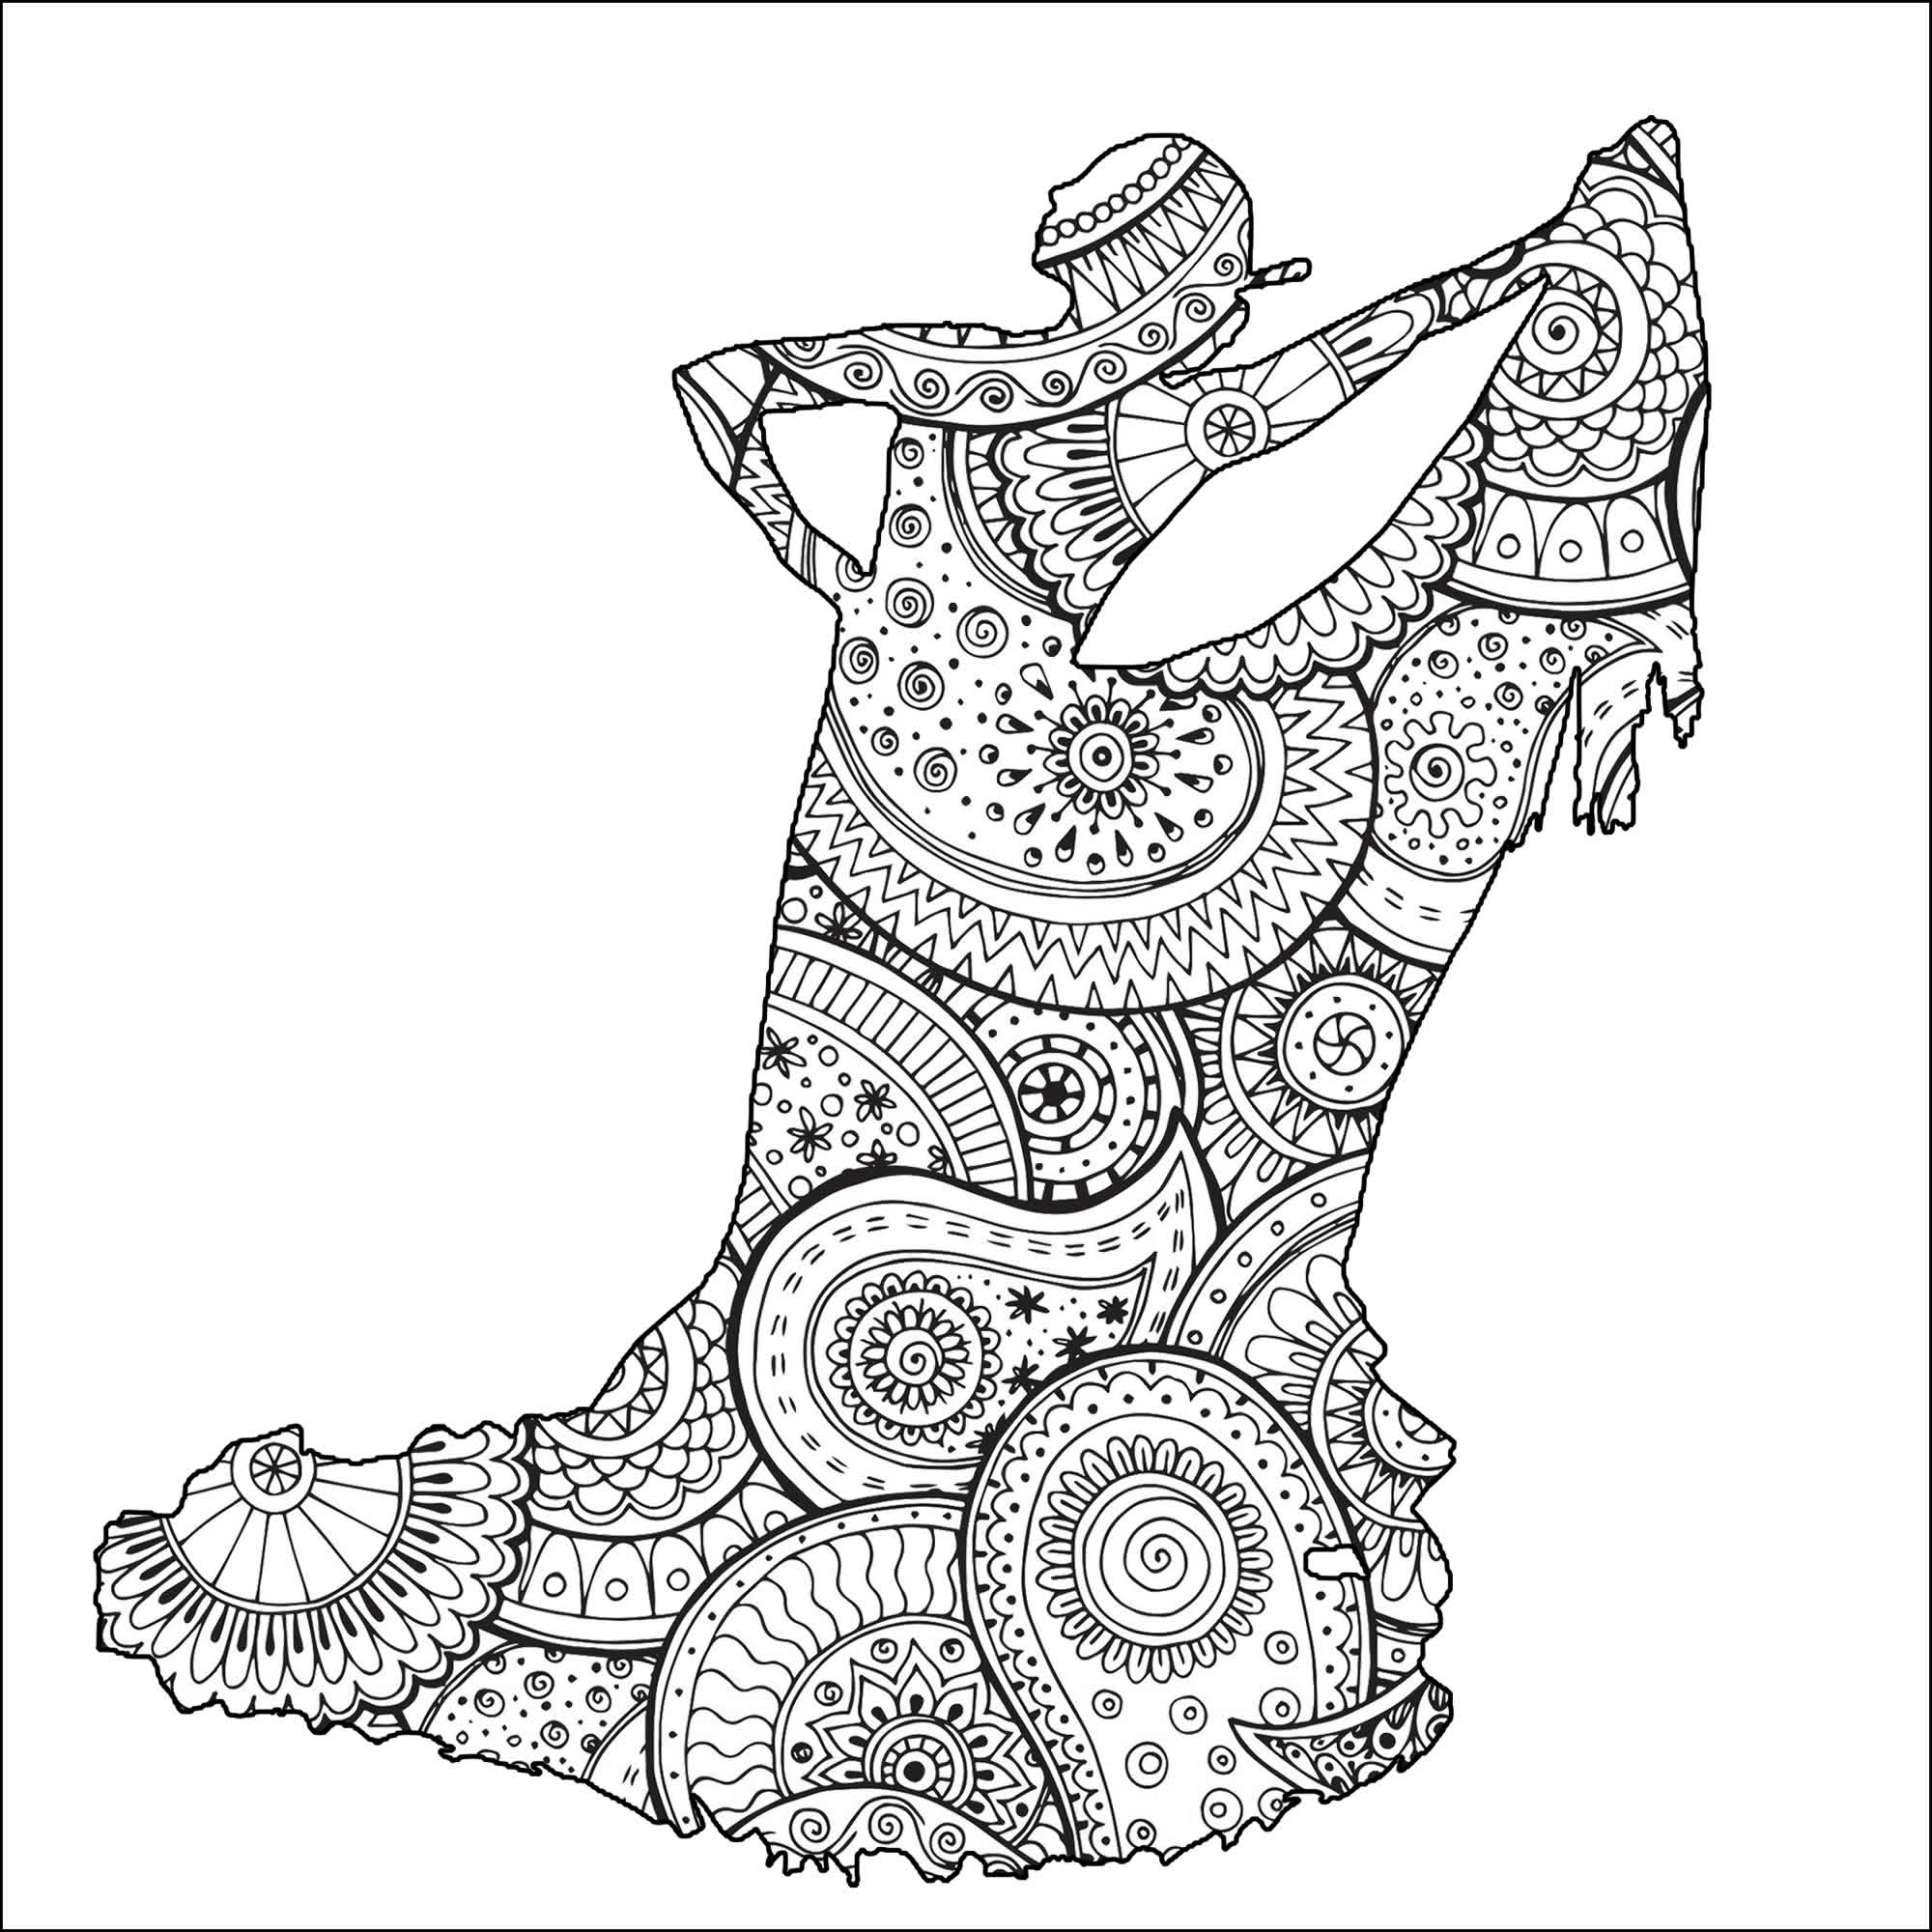 Bonita forma de bailarina de flamenco com padrões Zentangle e paisley, Artista : Art'Isabelle